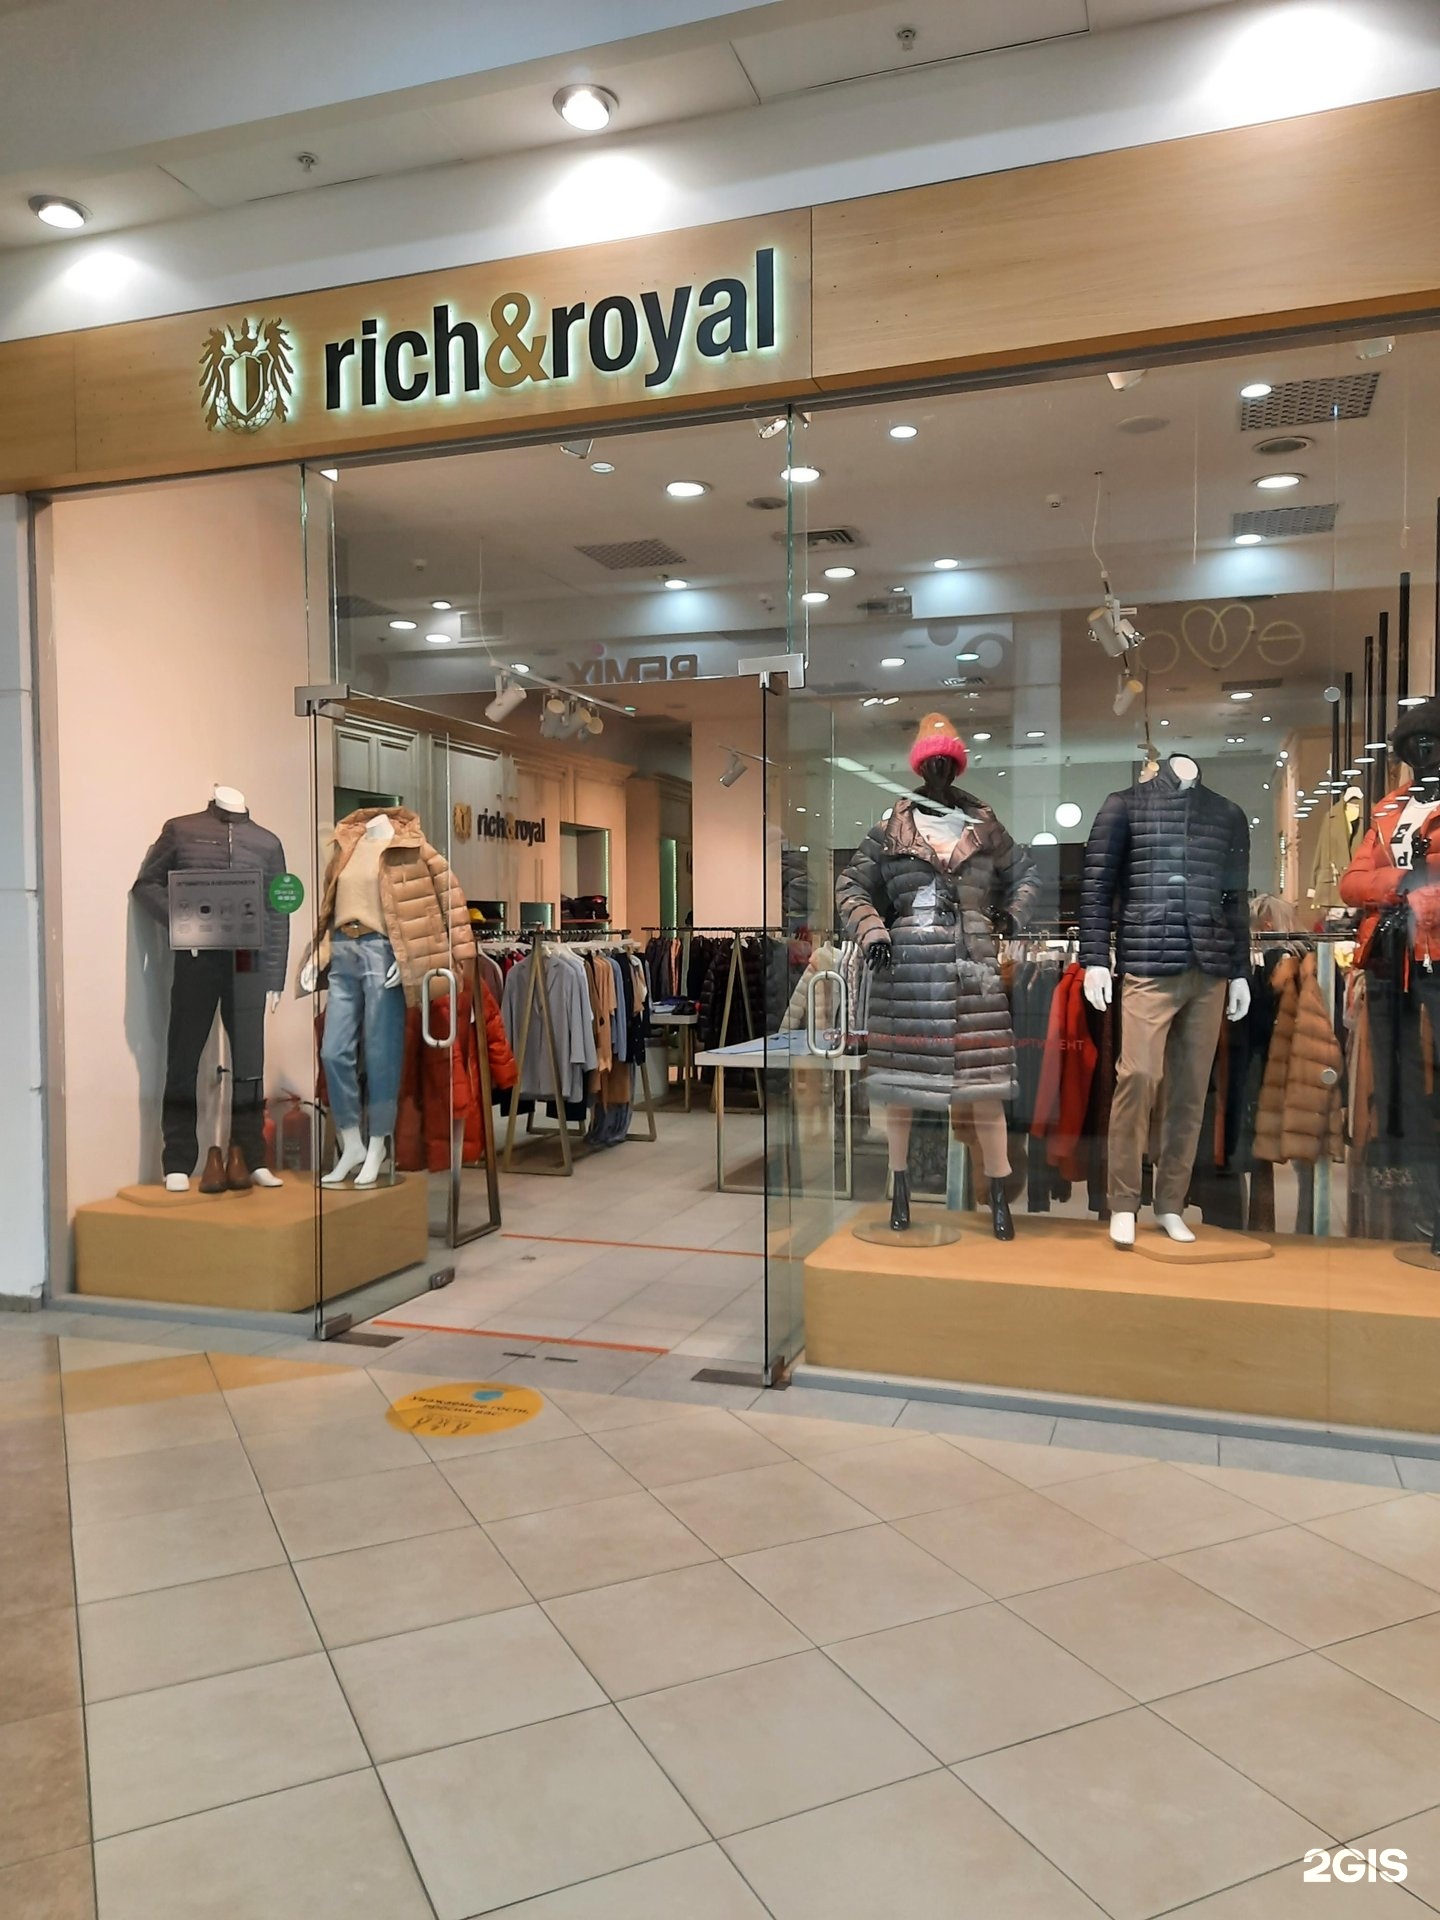 Royal boutique. Рич Роял одежда. Королевский бутик. Rich and Royal магазин. Парк Хаус магазины одежды.